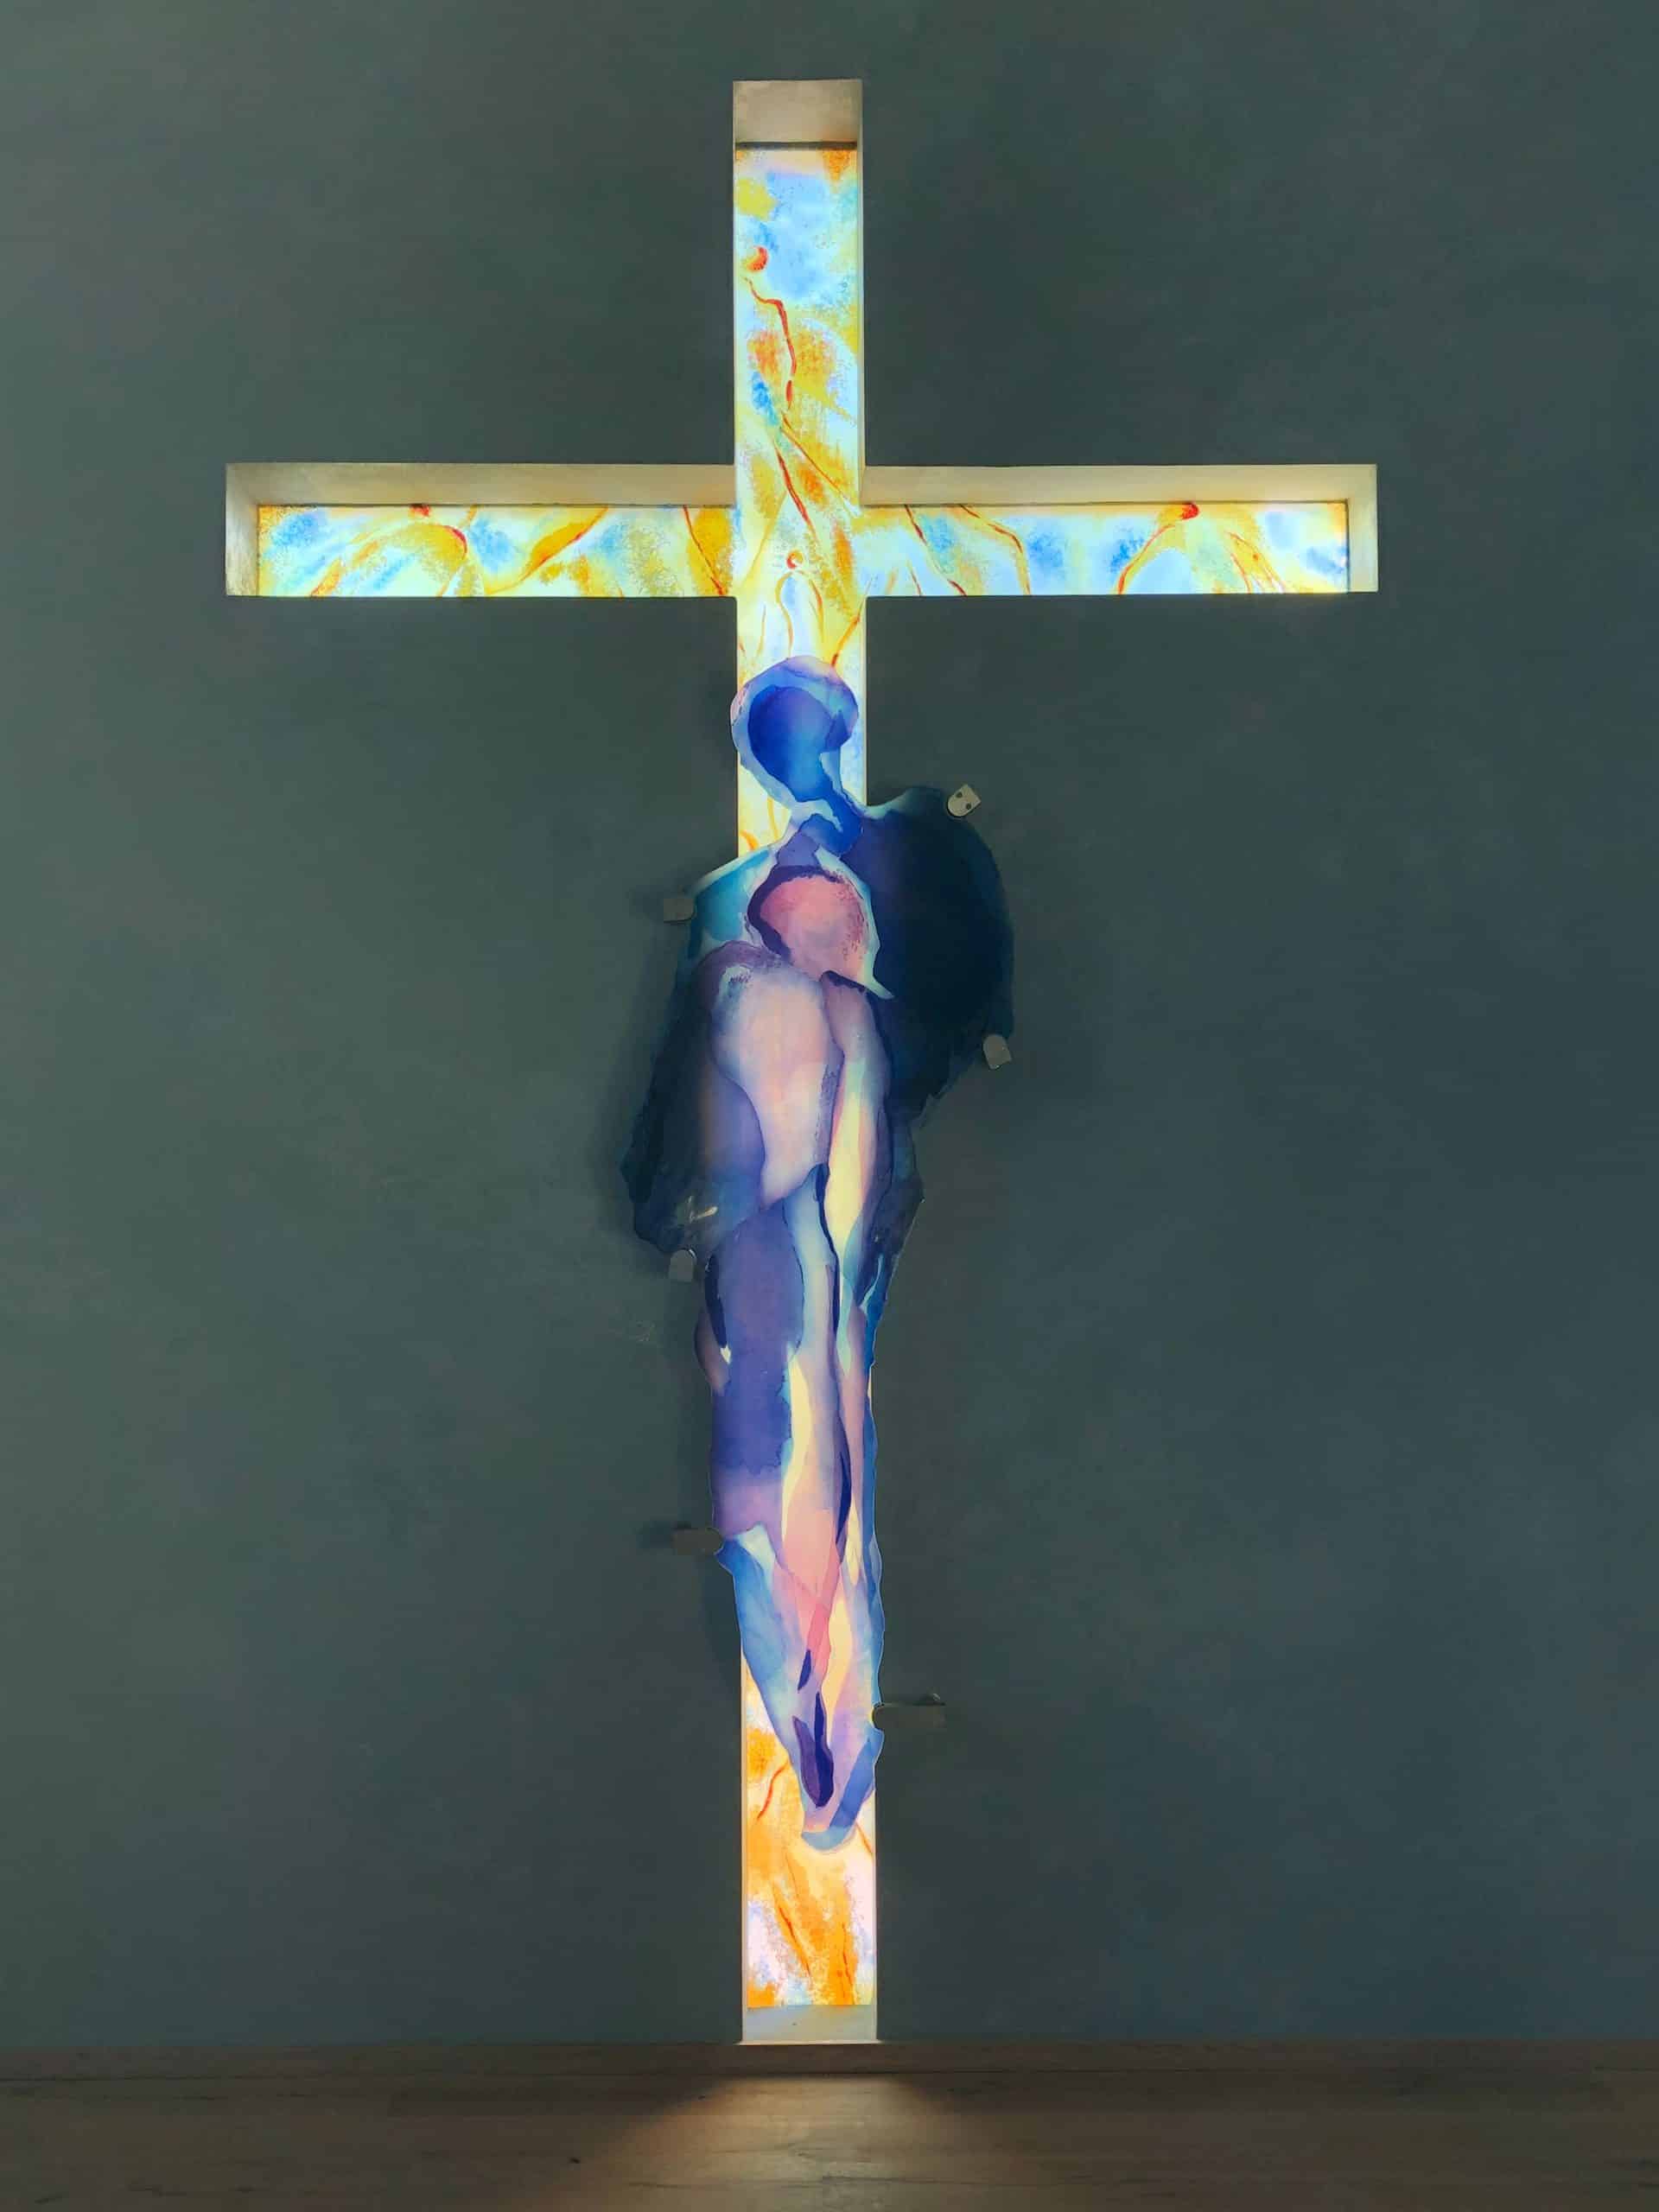 Farbenfrohes Glas-Kreuz mit abstrakter Darstellung von Jesus an der Wand. Warme Töne mit blau-violetten Akzenten.